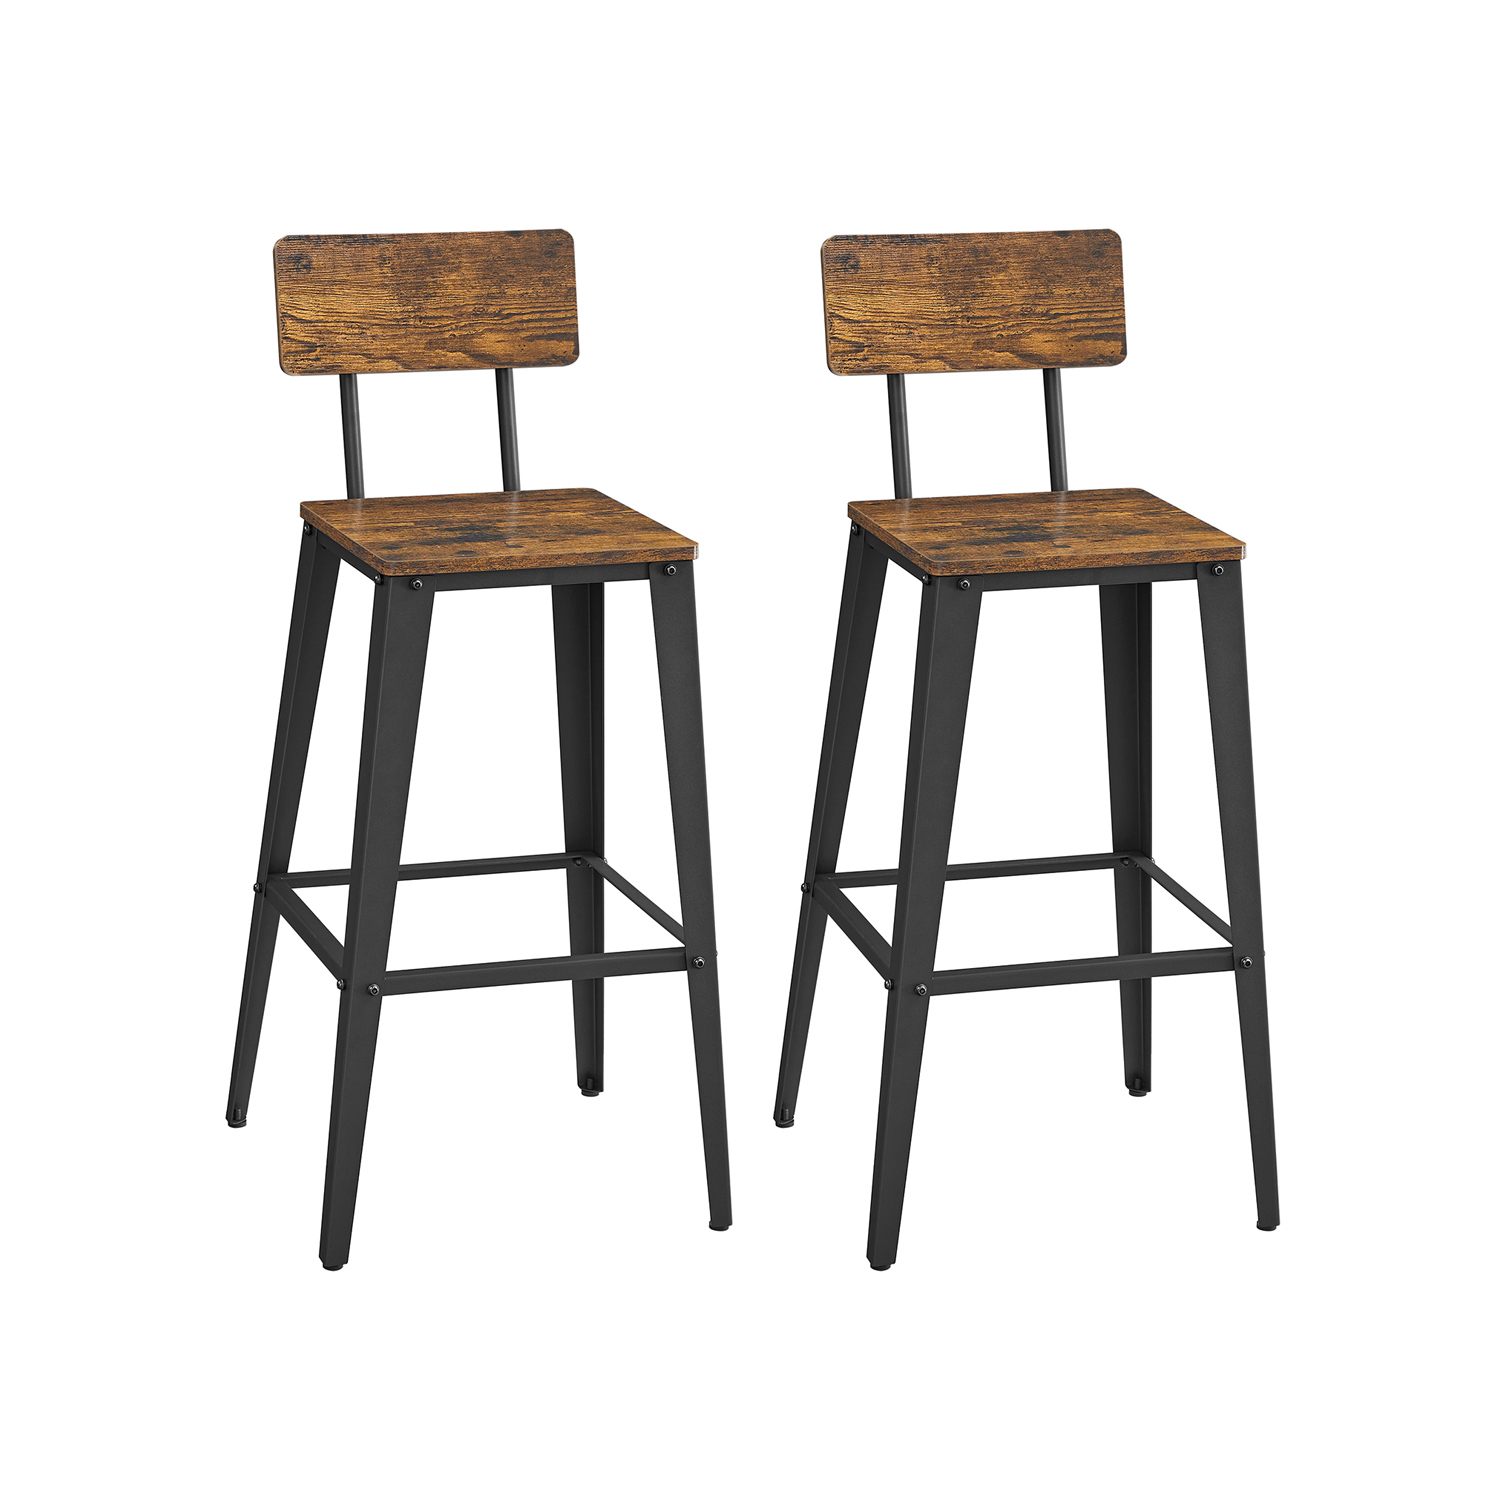 Billede af Barstole med ryglæn - sæt med 2 barstole - rustik brun og sort - Barstole > Barstole i industrielt design - Daily-Living